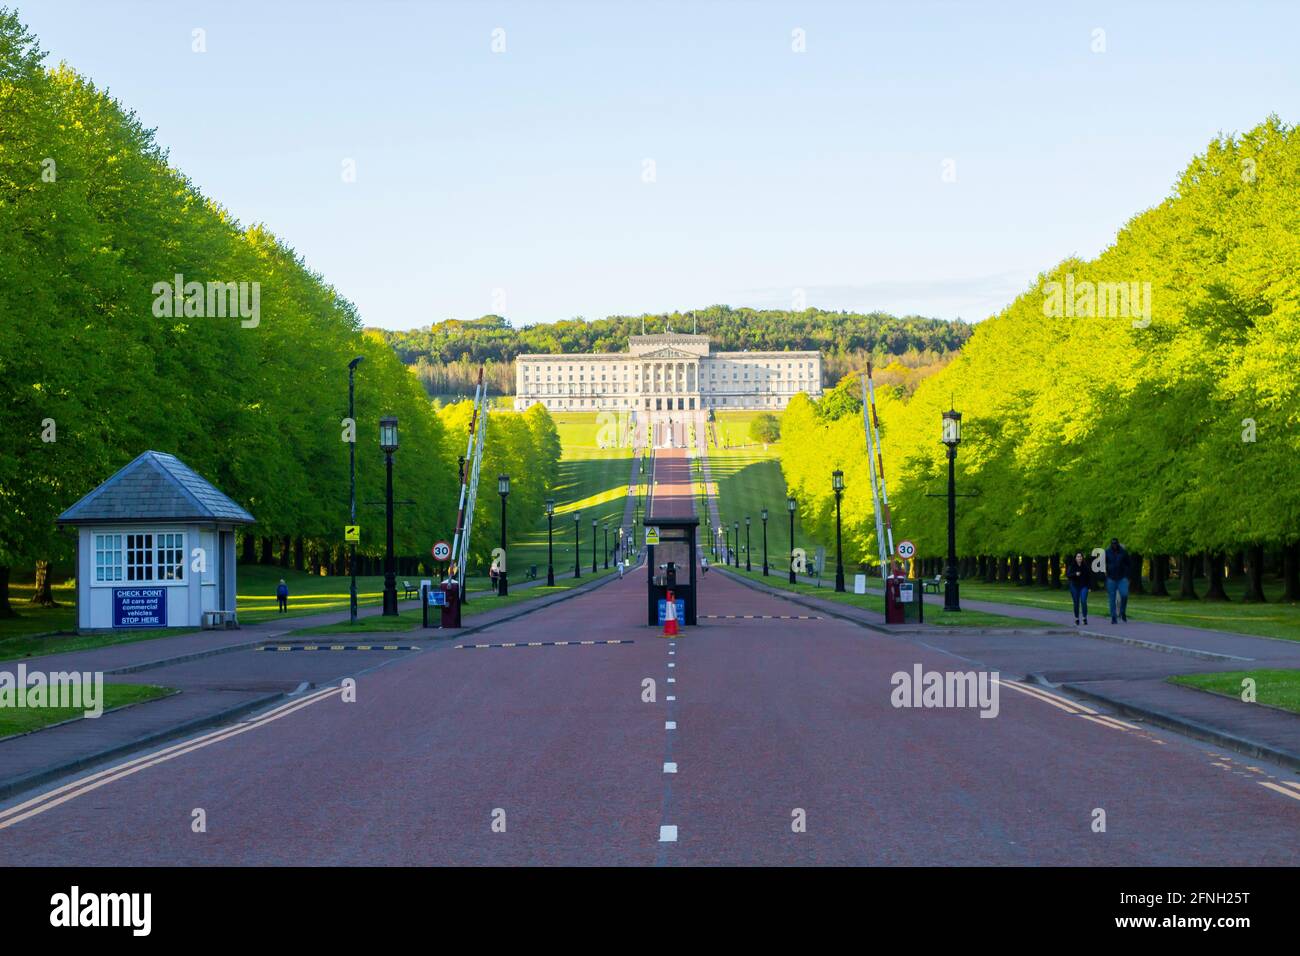 16 maggio 2021 visitatori che camminano lungo viale alberato Al Parlamento Stormont edificio dell'Irlanda del Nord situato su La tenuta di Stormont in est Foto Stock